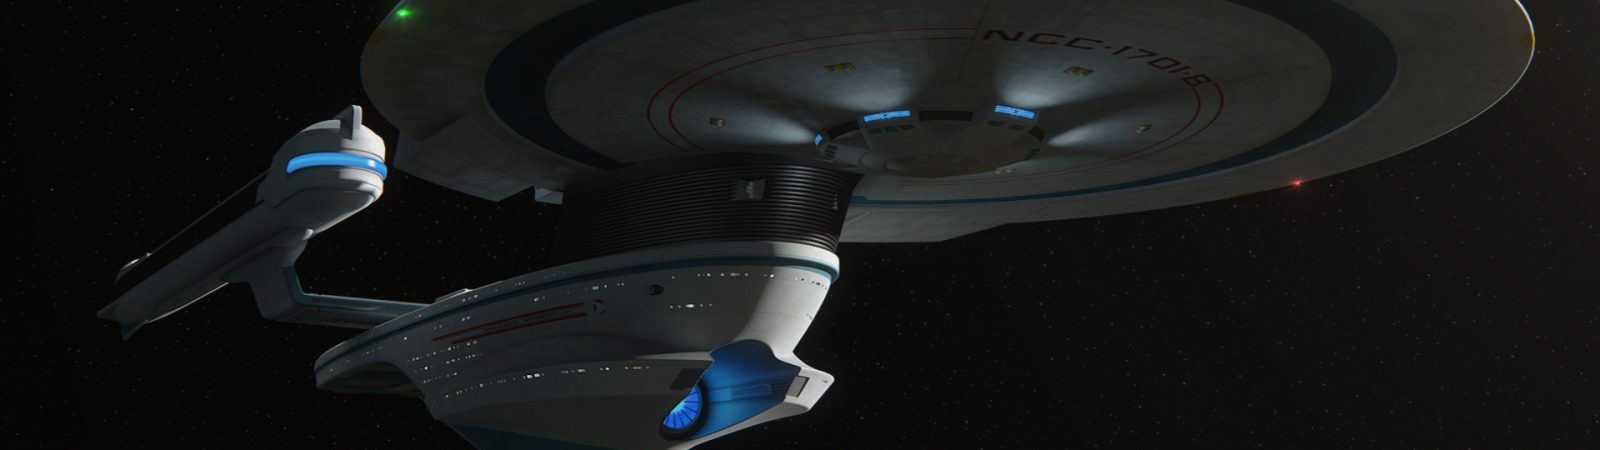 Enterprise-A update #9